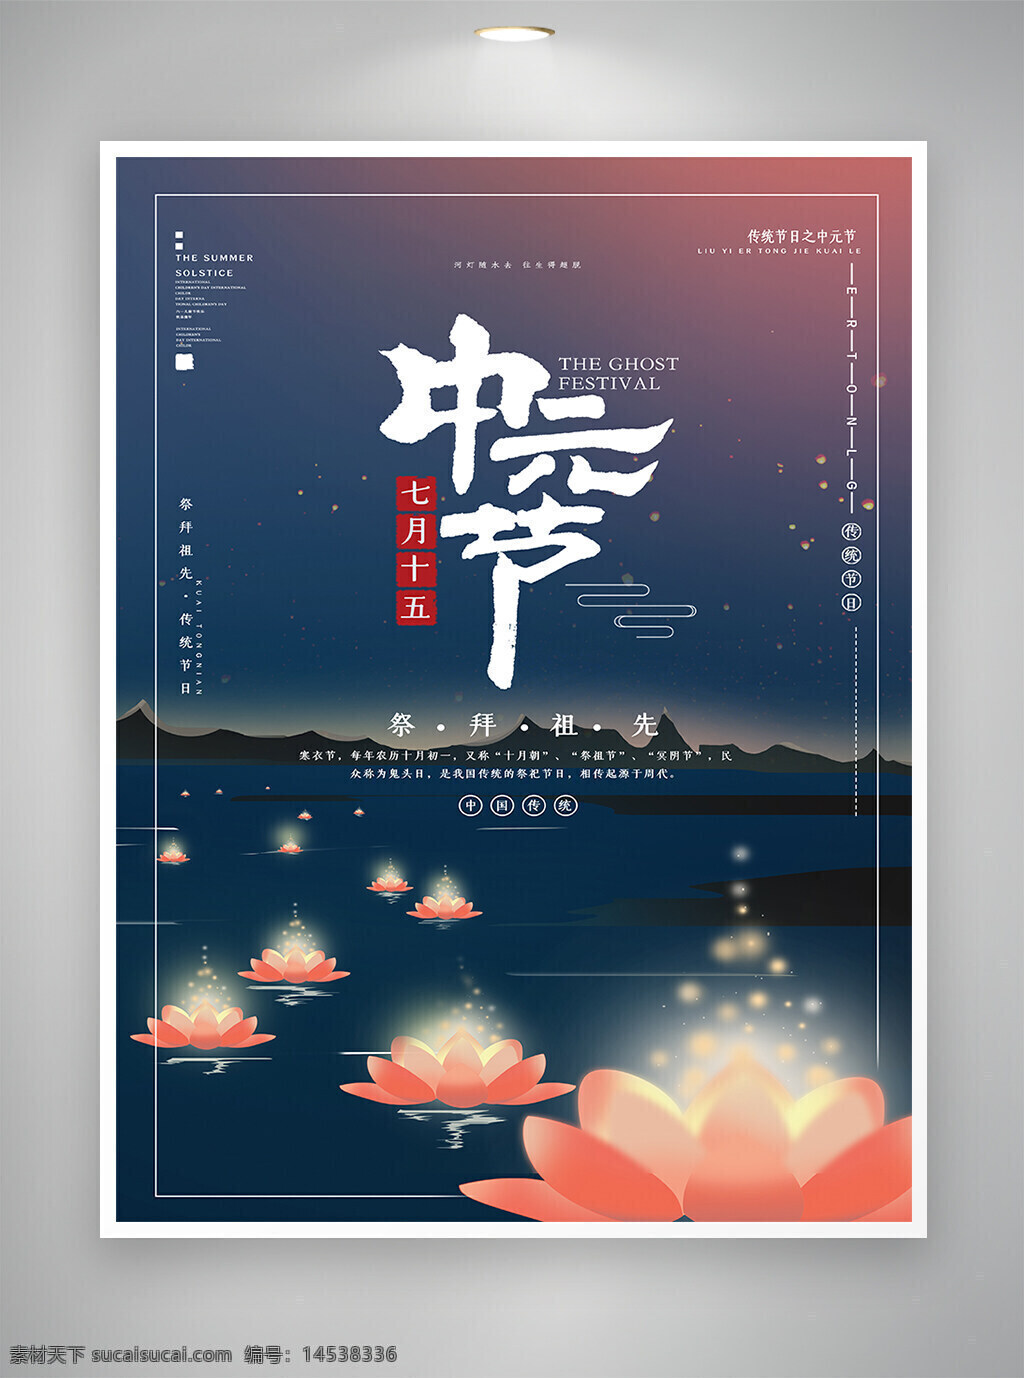 中元节 传统节日 节日海报 海报 中元祭祖 中元思故 七月半